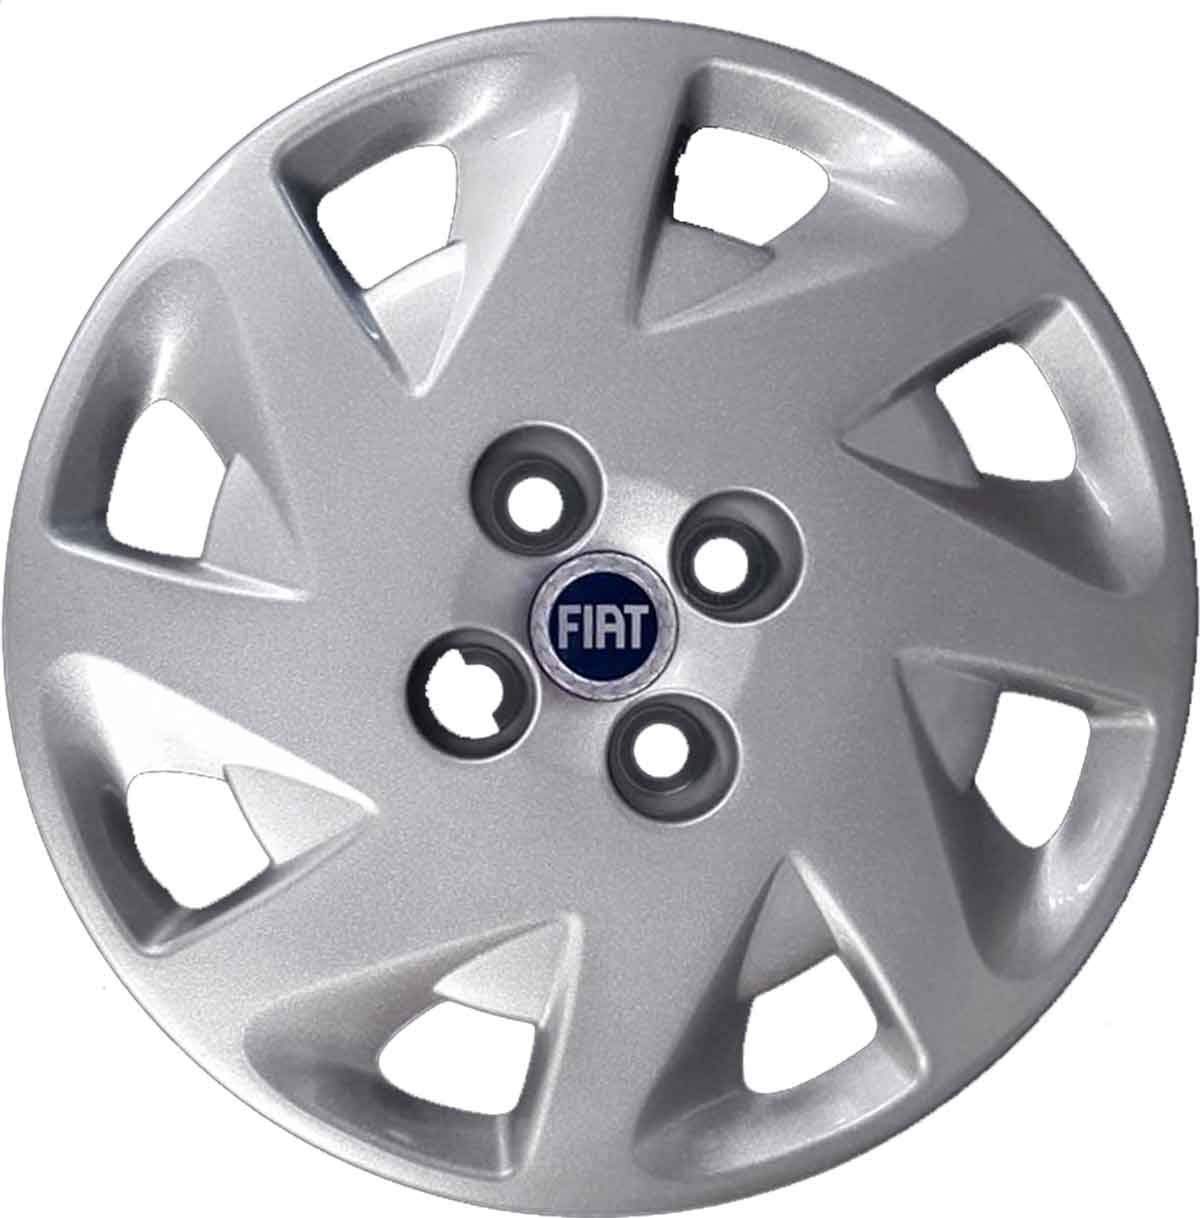 approx. 38.10 cm Grande Fiat Punto Tapacubos De Rueda Recortar Plástico cubre conjunto completo Plata sprk 15 in 